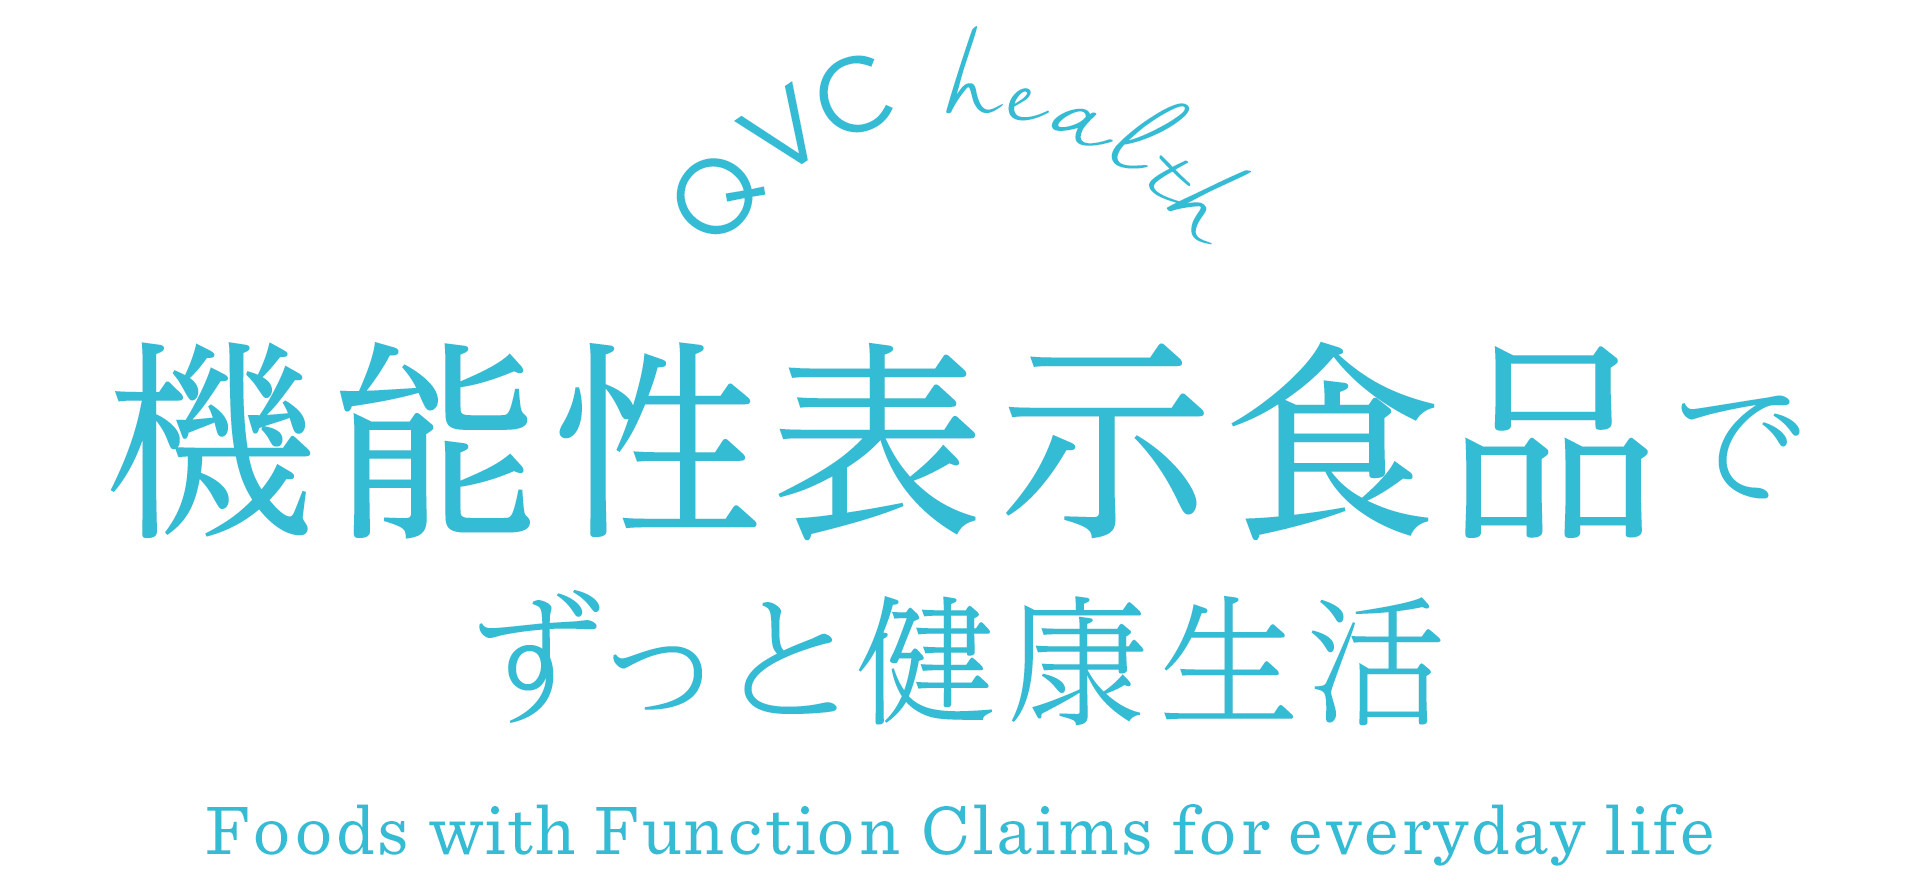 QVC health @\\HiłƌN